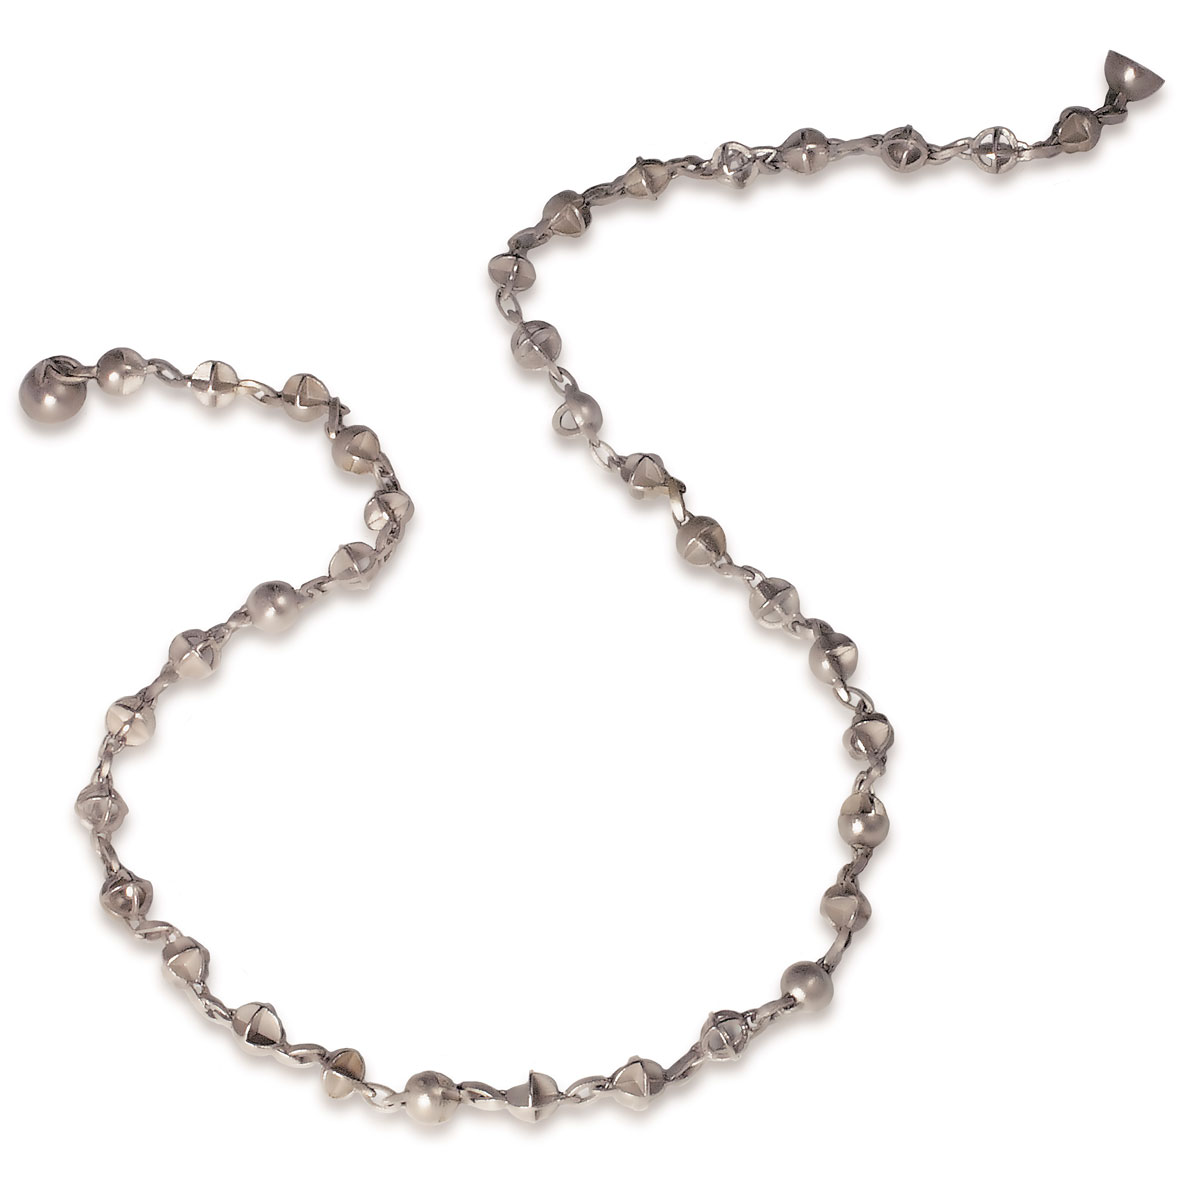 Silver orbital necklace